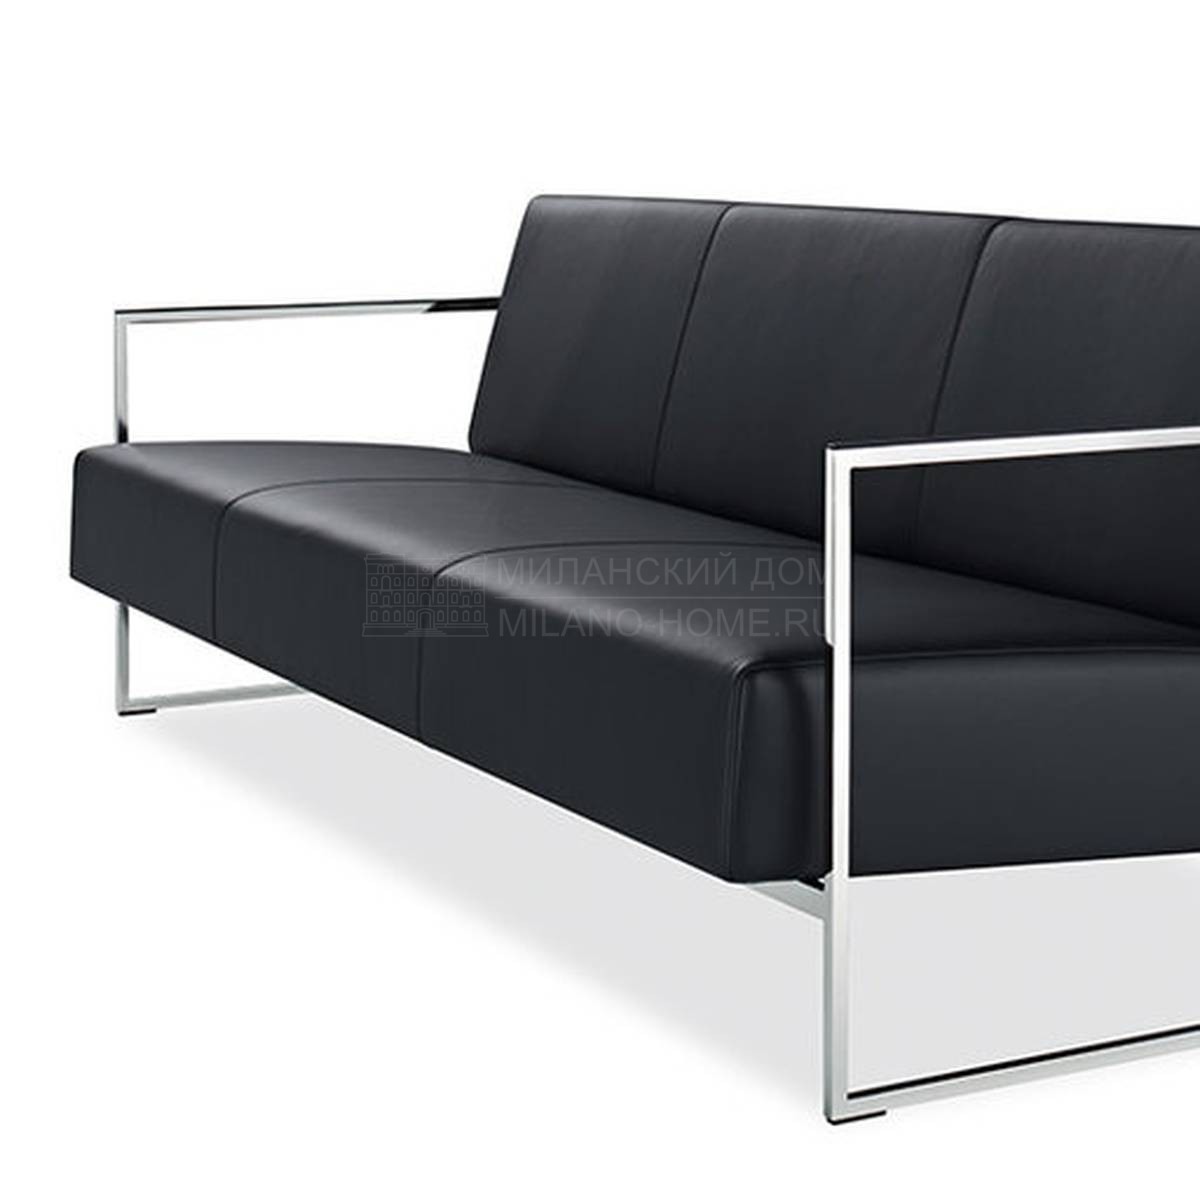 Прямой диван Sen/sofa из Германии фабрики WALTER KNOLL